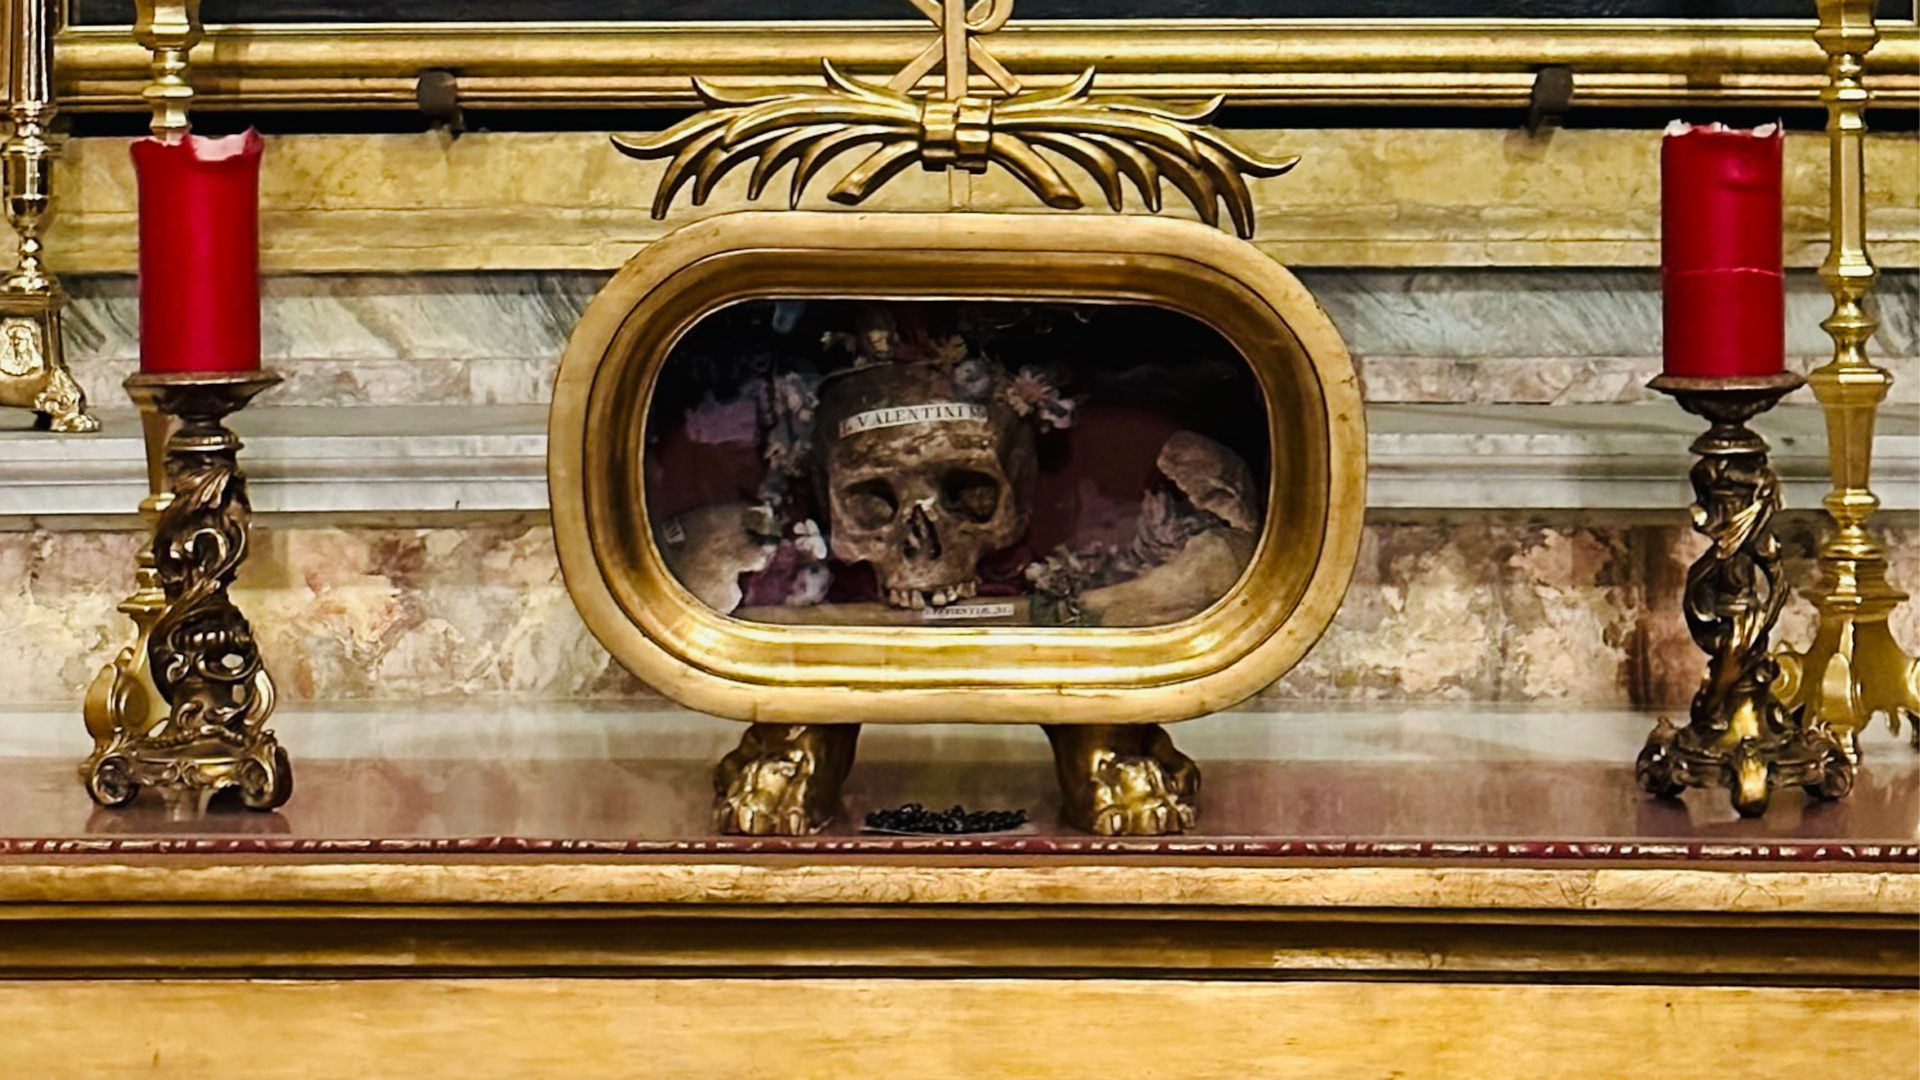 Saint Valentine, skull on display